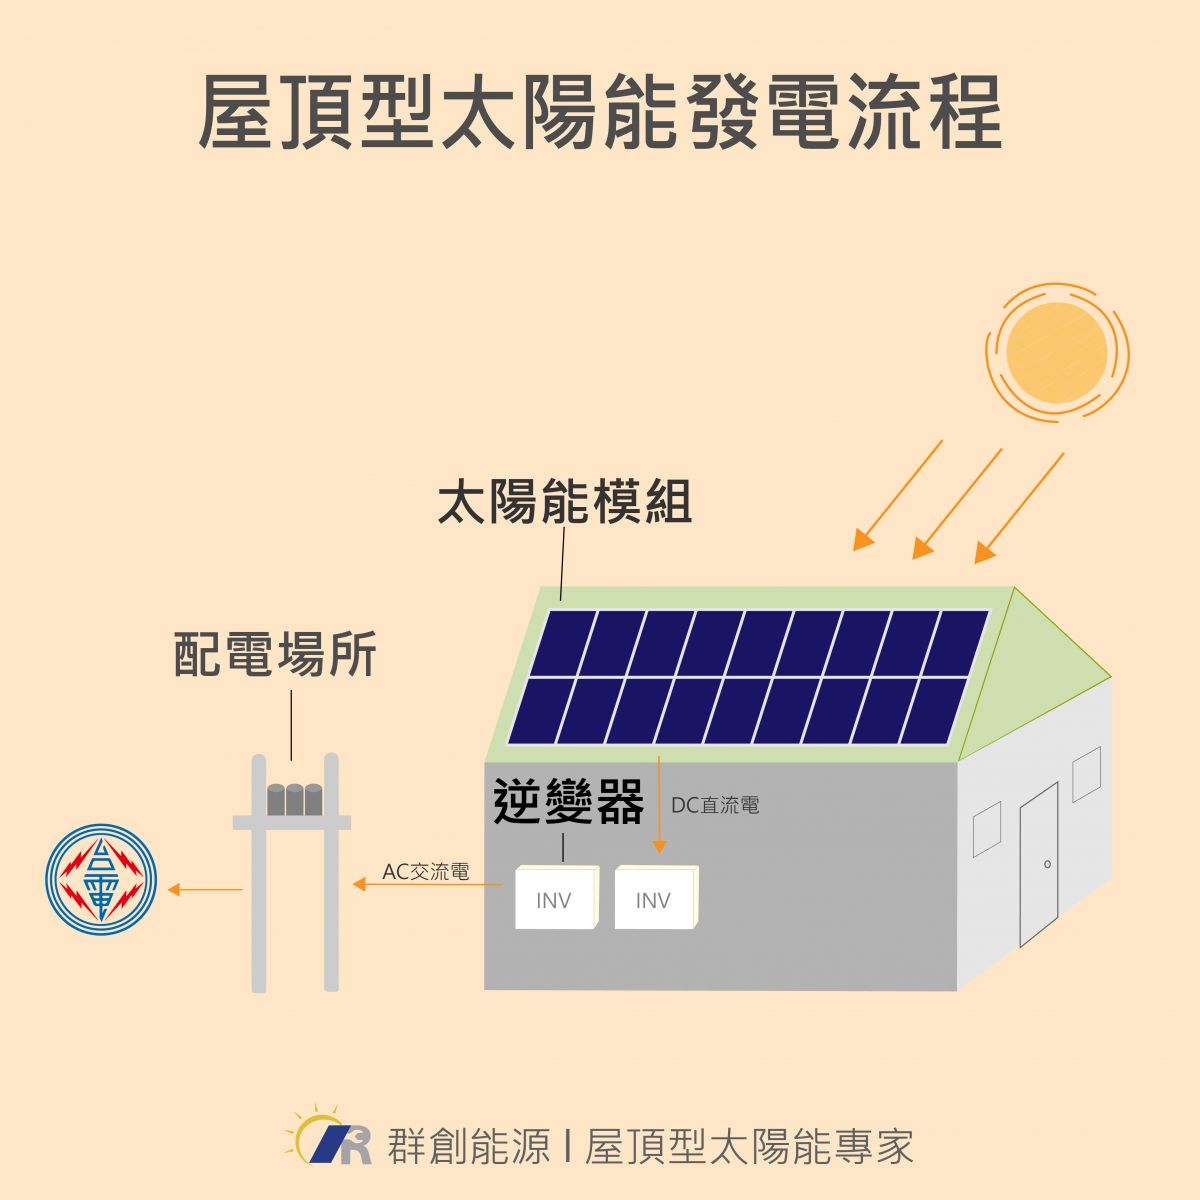 屋頂型太陽能發電流程圖